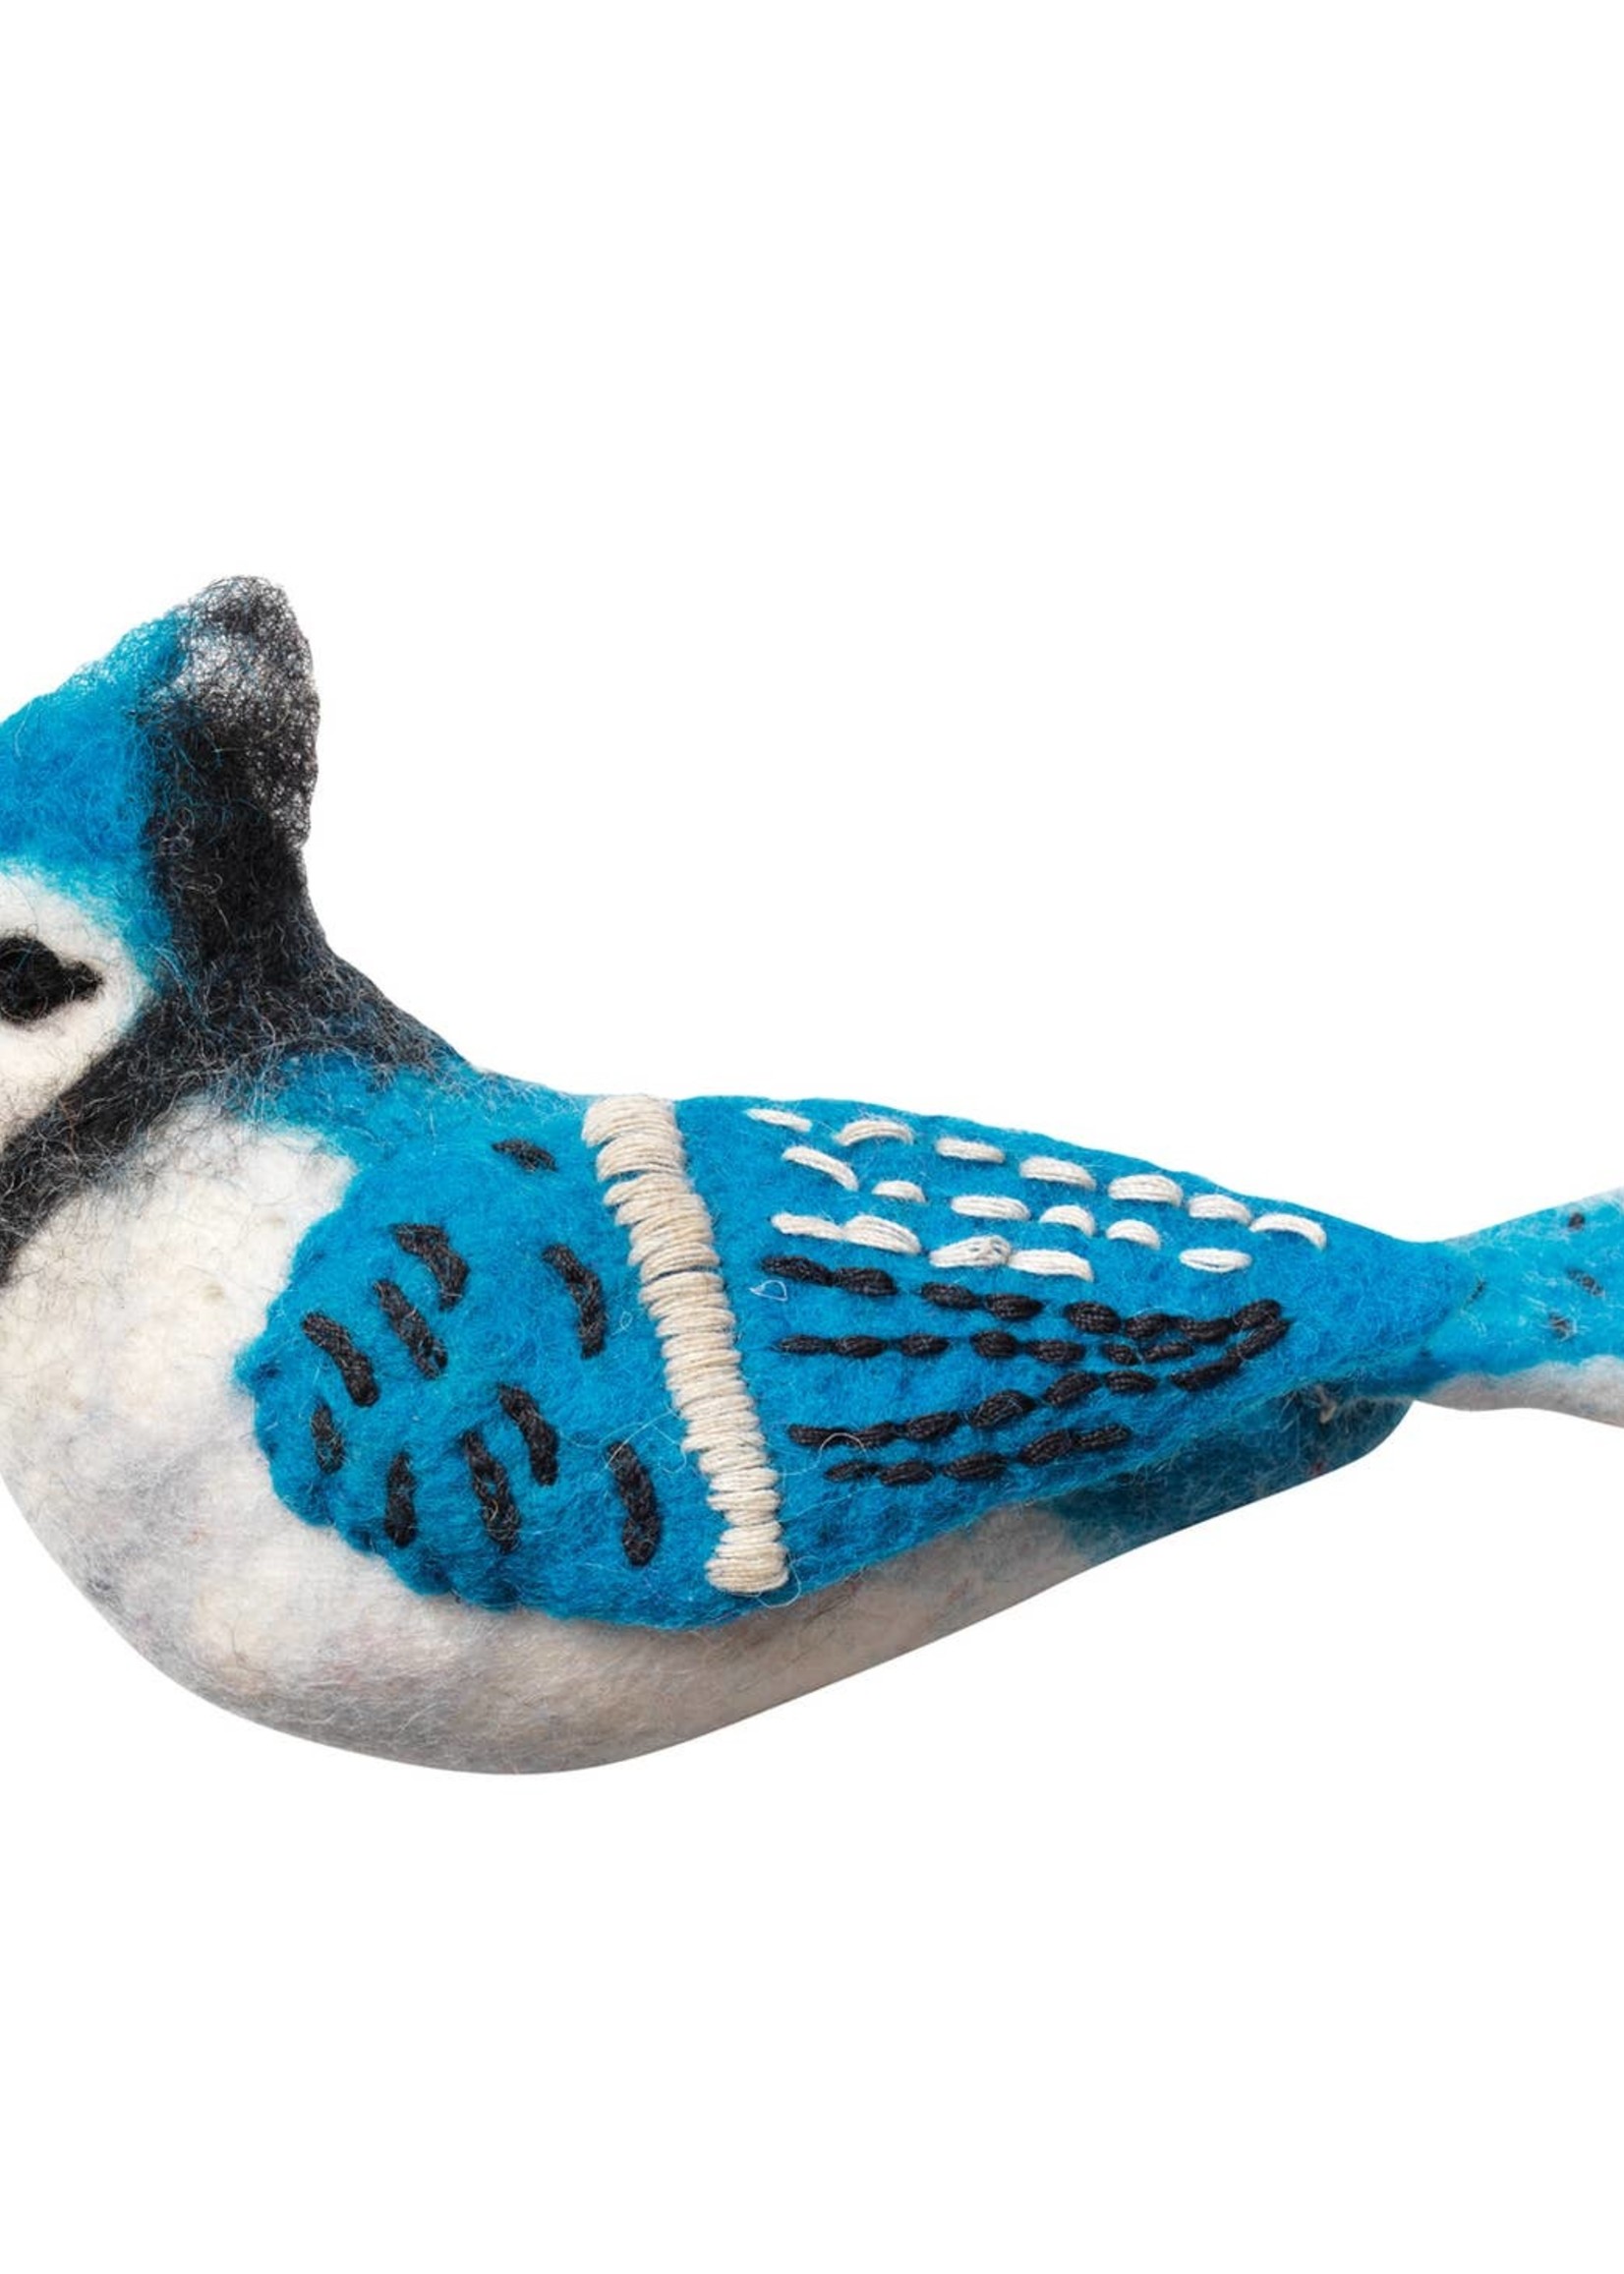 dZi Handmade Woolie Bird Ornament